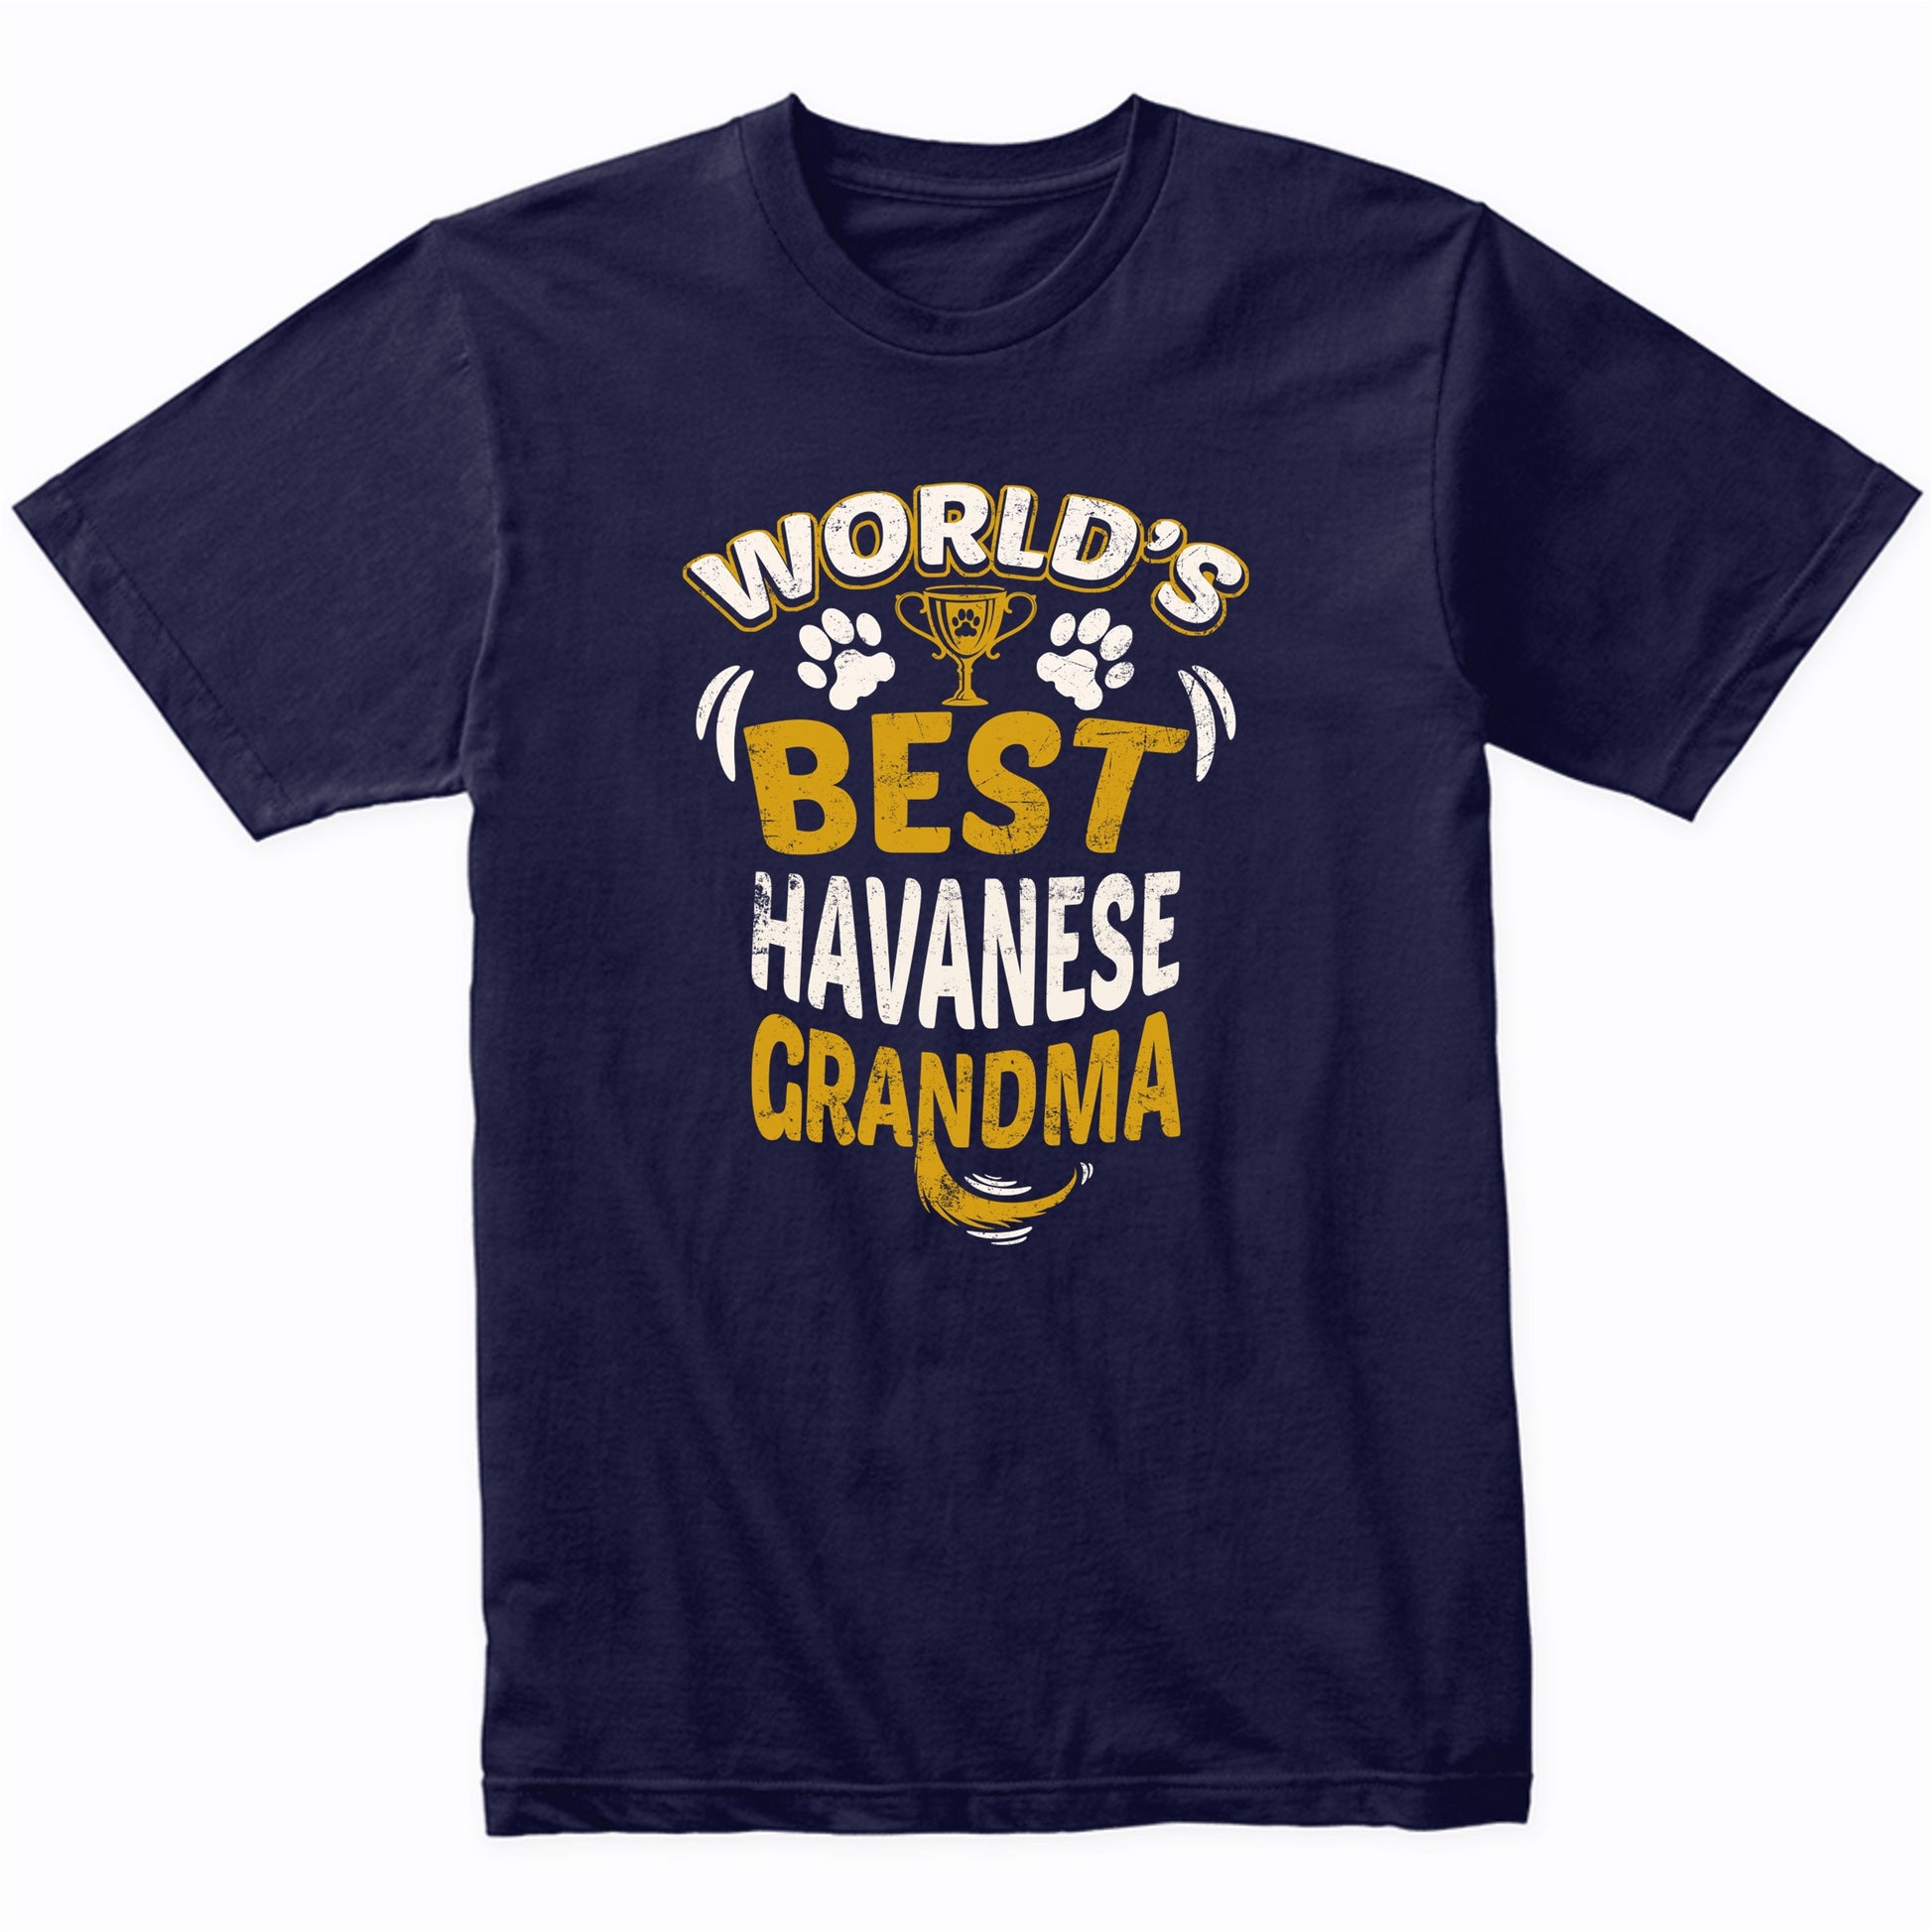 World's Best Havanese Grandma Graphic T-Shirt